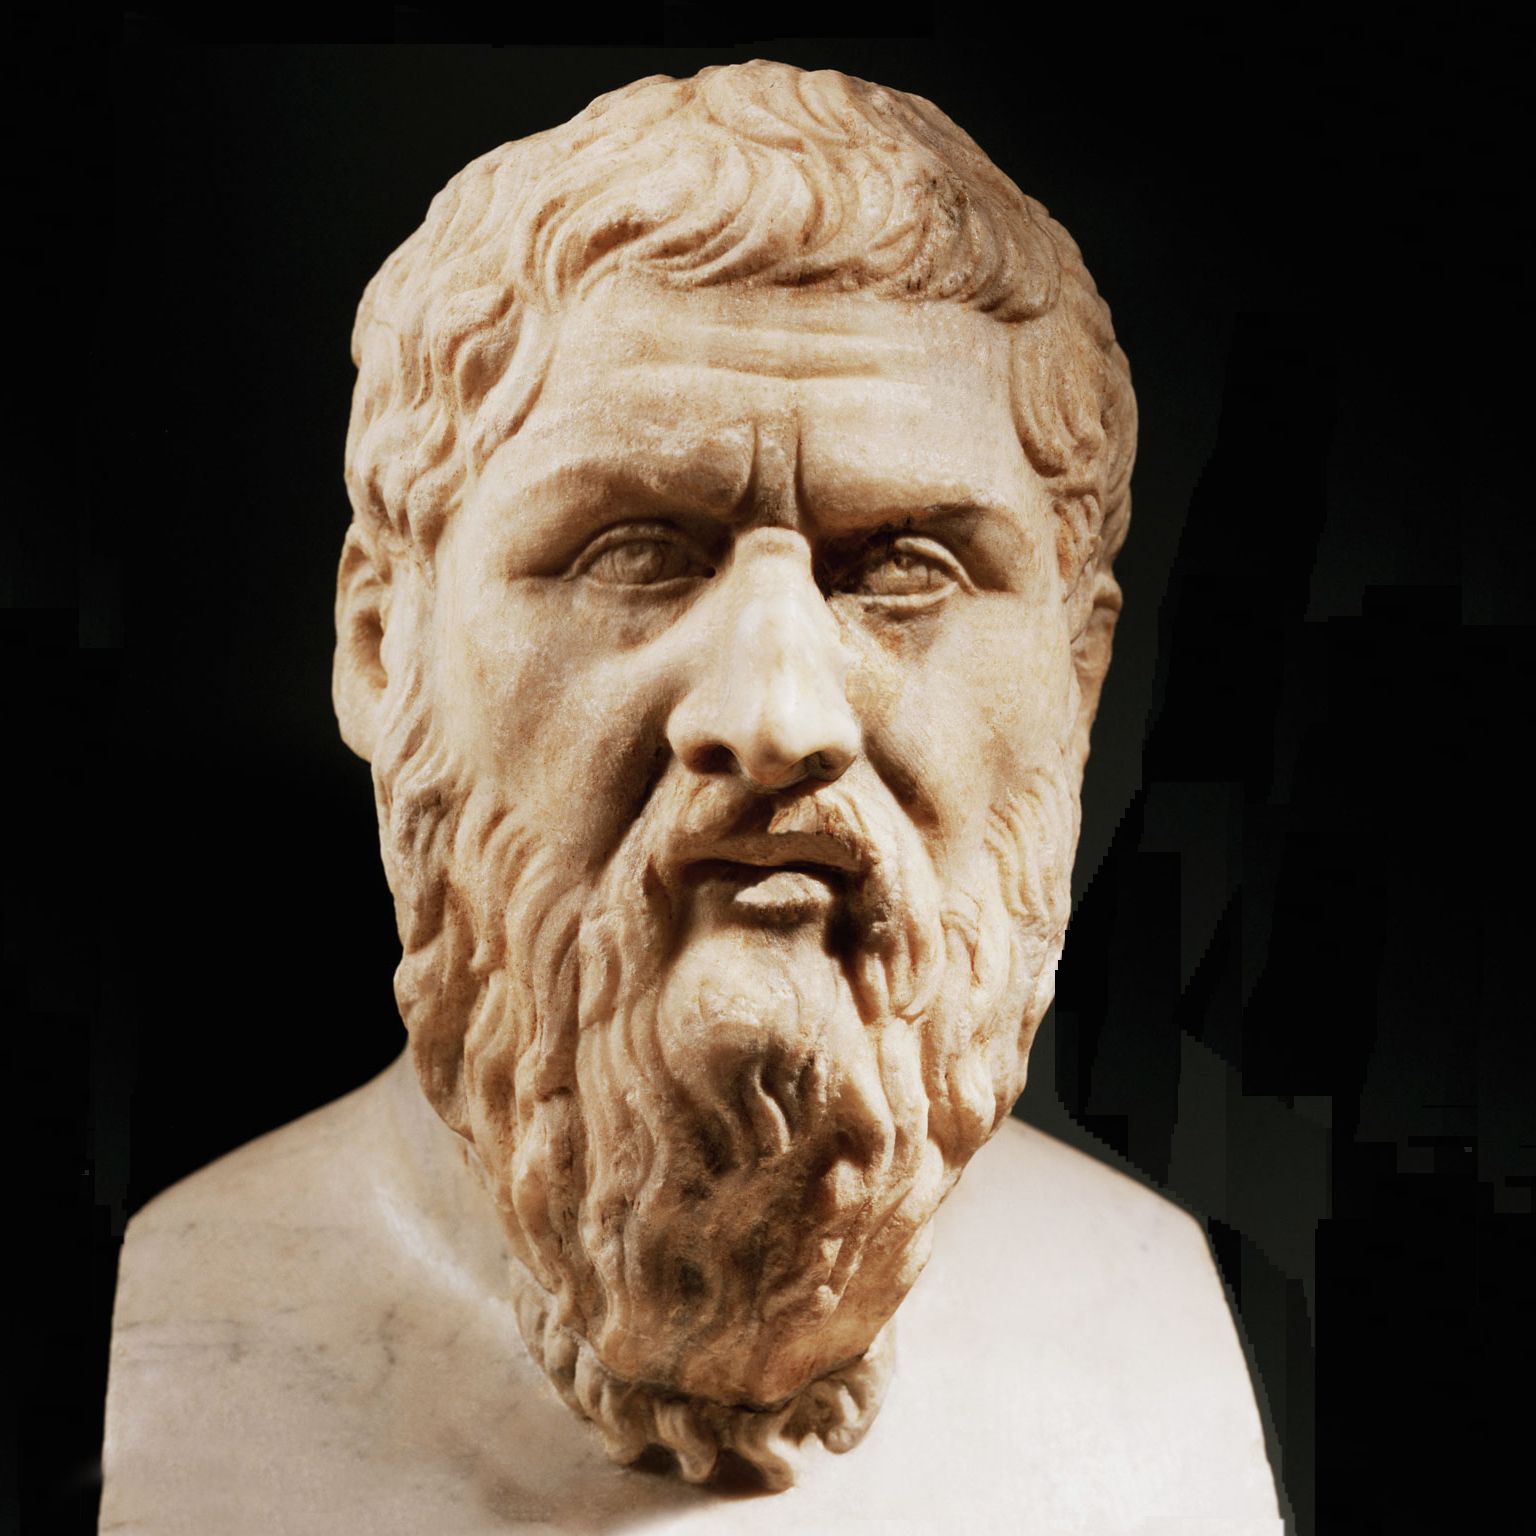 Платон 